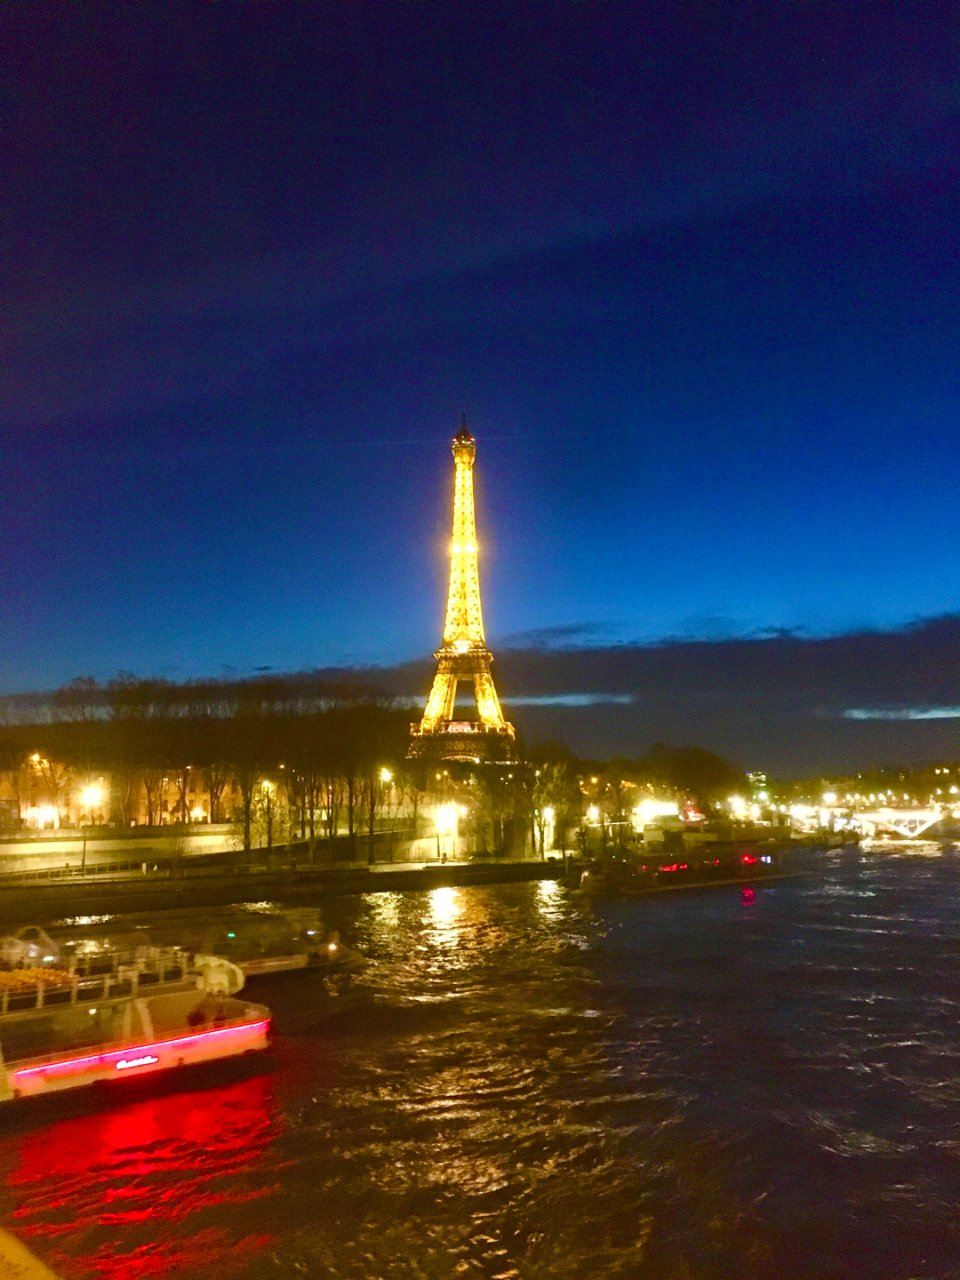 巴黎旅游必去之埃菲尔铁塔...